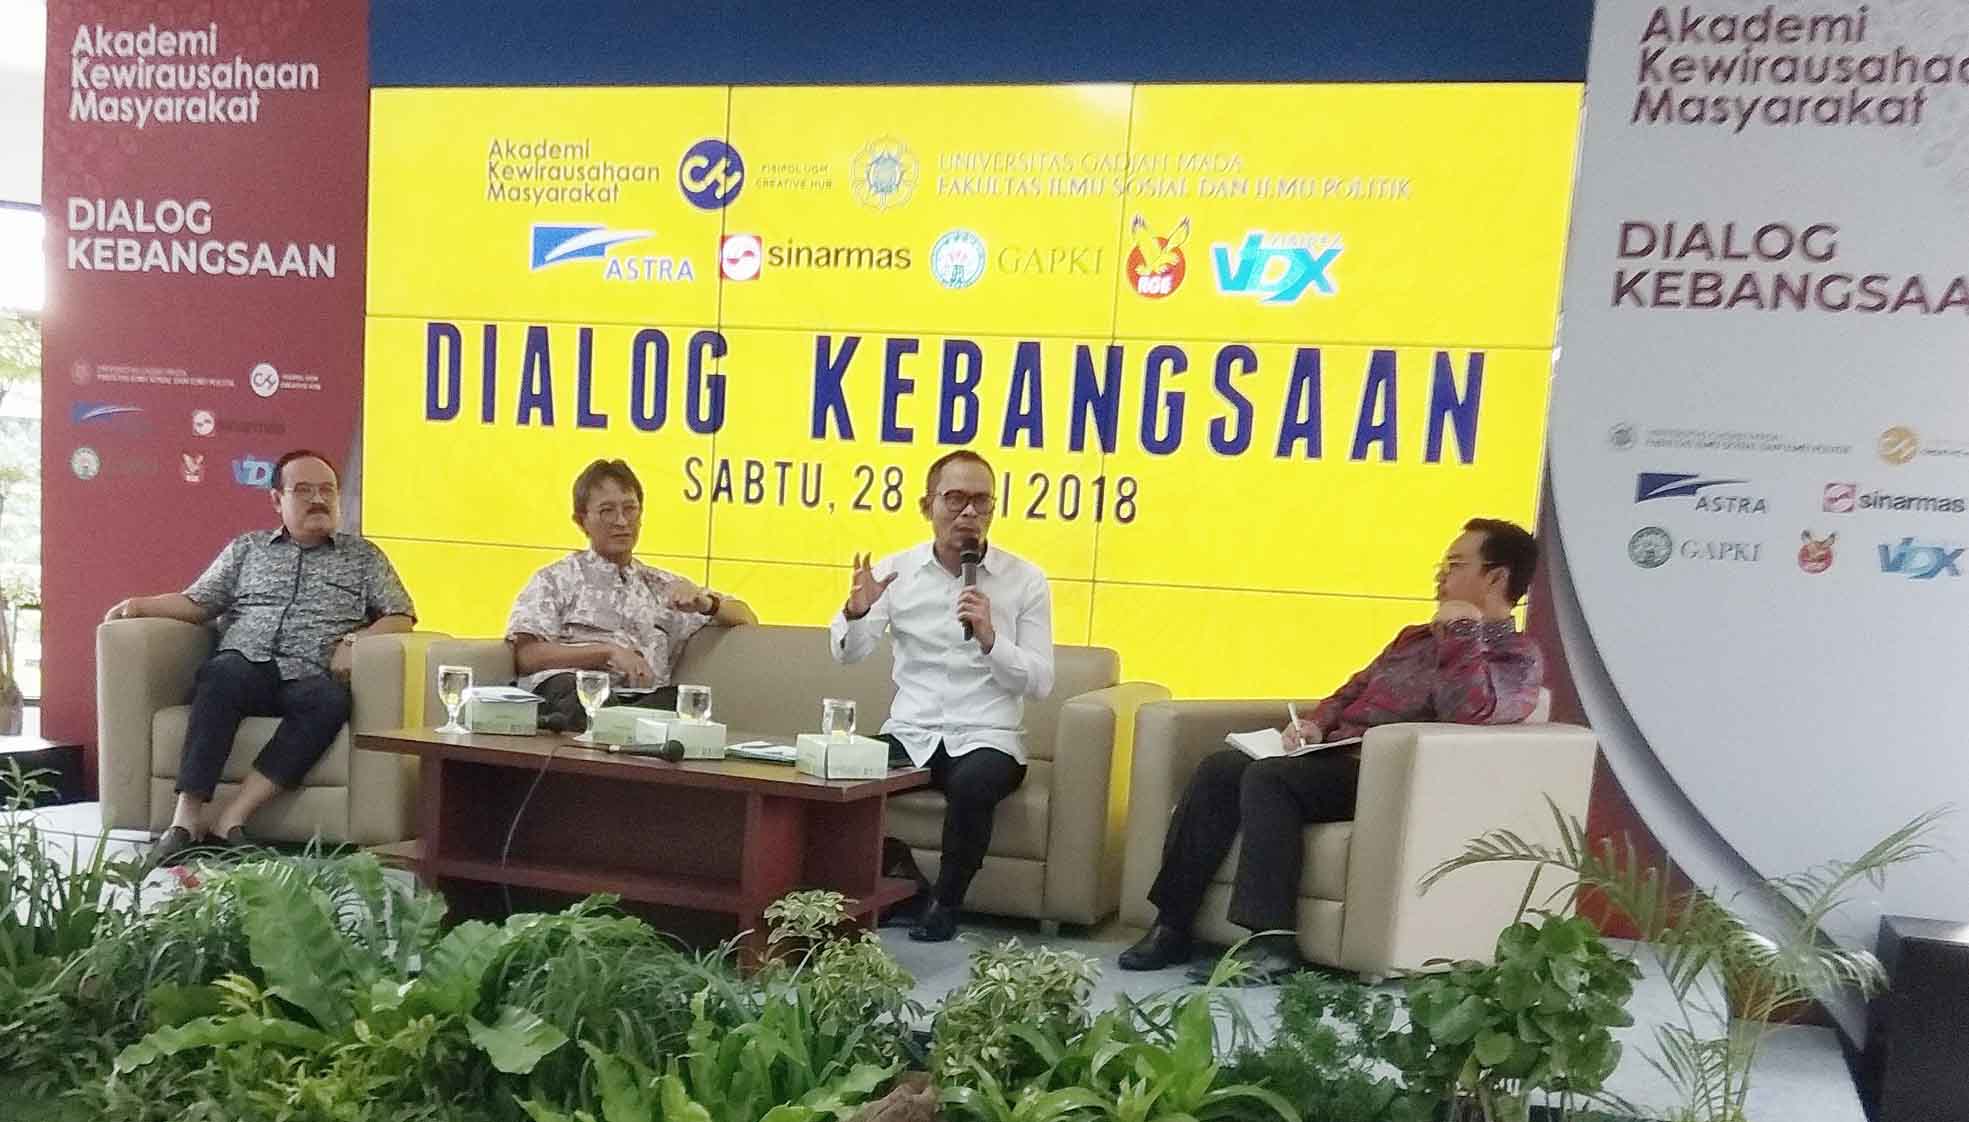 Menteri Tenaga Kerja M Hanif Dhakiri saat berbicara pada Dialog Kebudayaan di Fisipol UGM. (Foto: Erwan Widyarto)